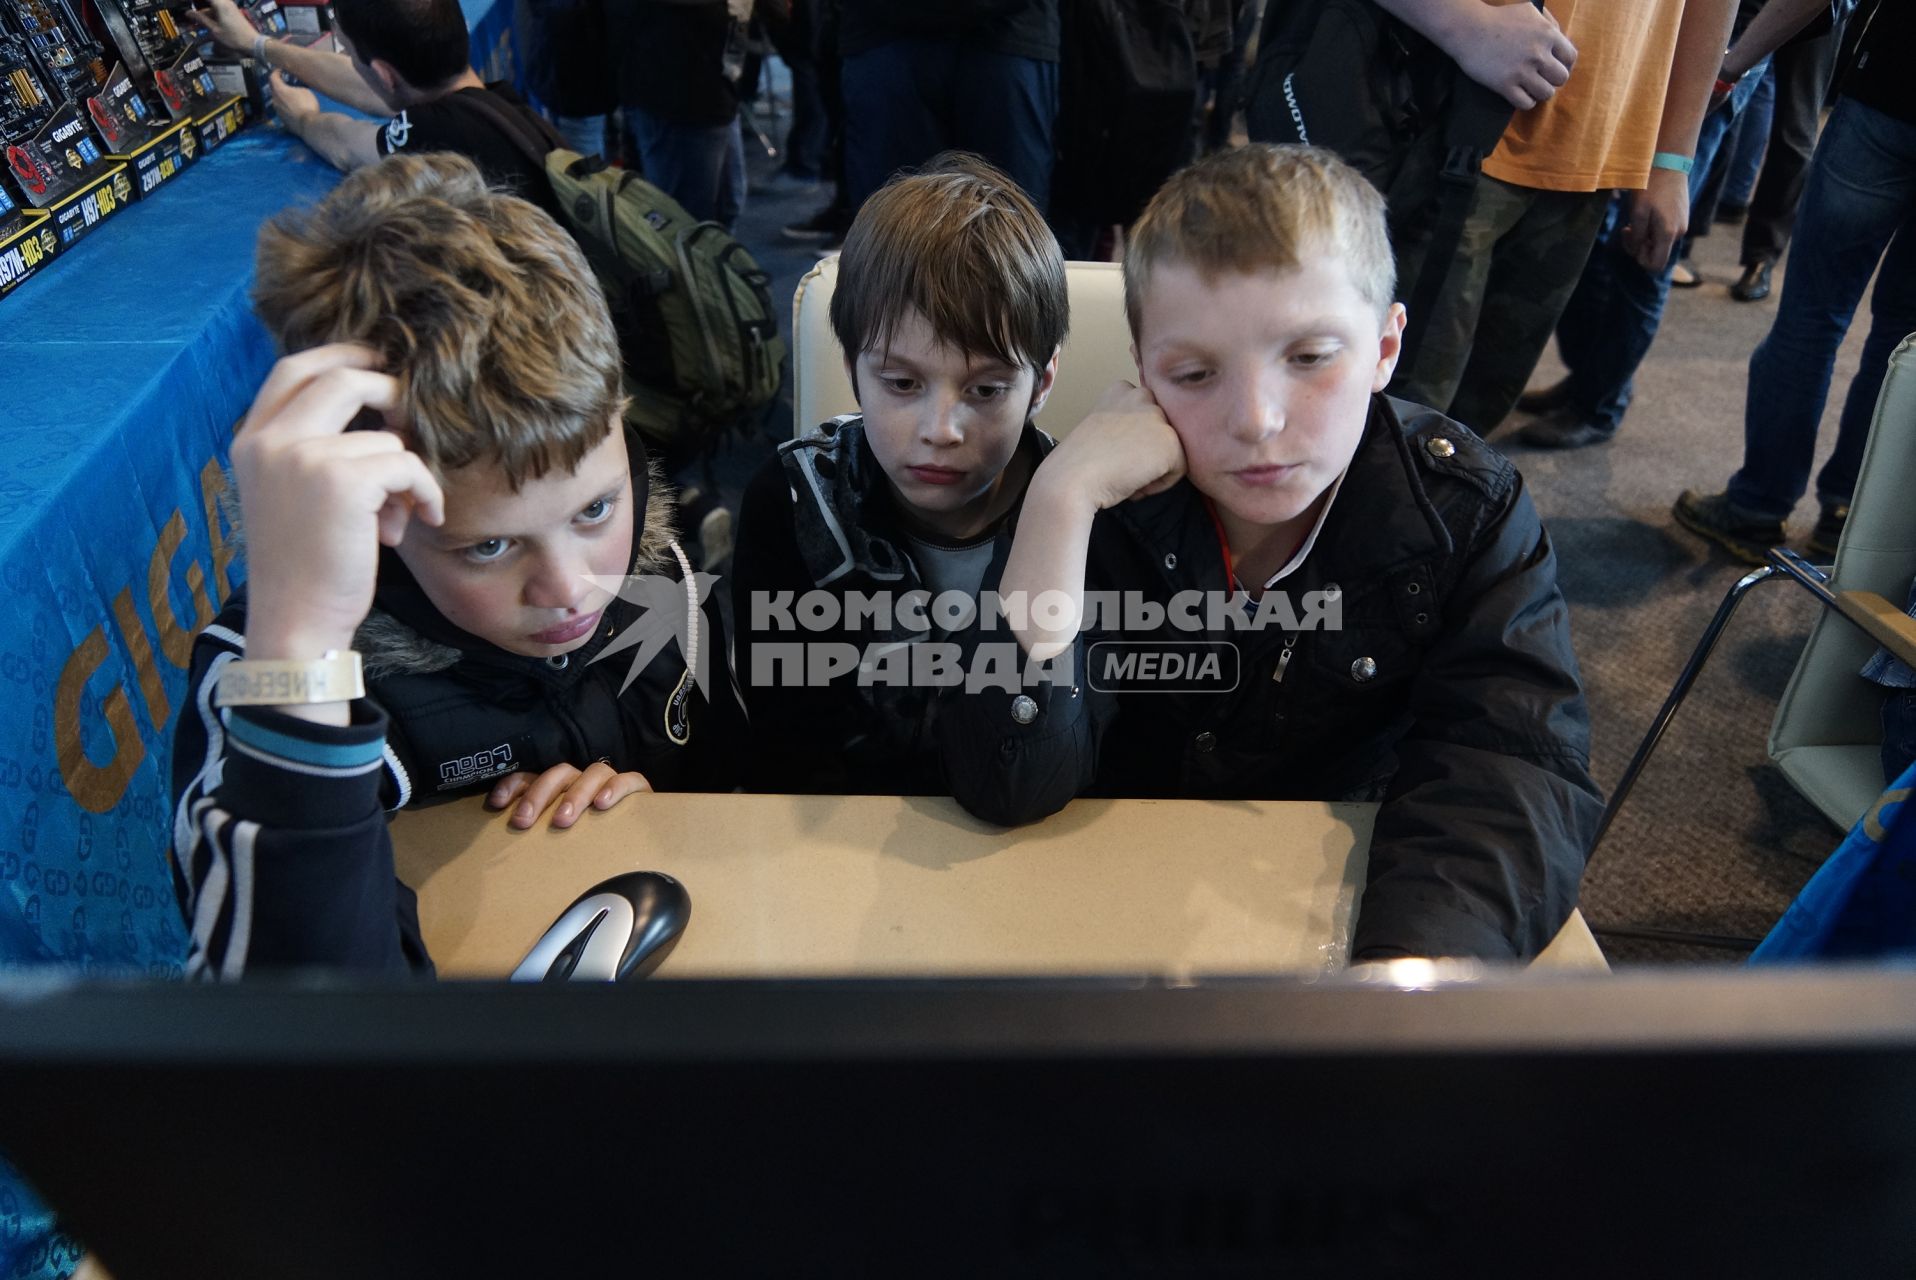 Екатеринбург. Участники виртуального шоу `Киберфест-2015` во время соревнований по компьютерным сетевым играм.